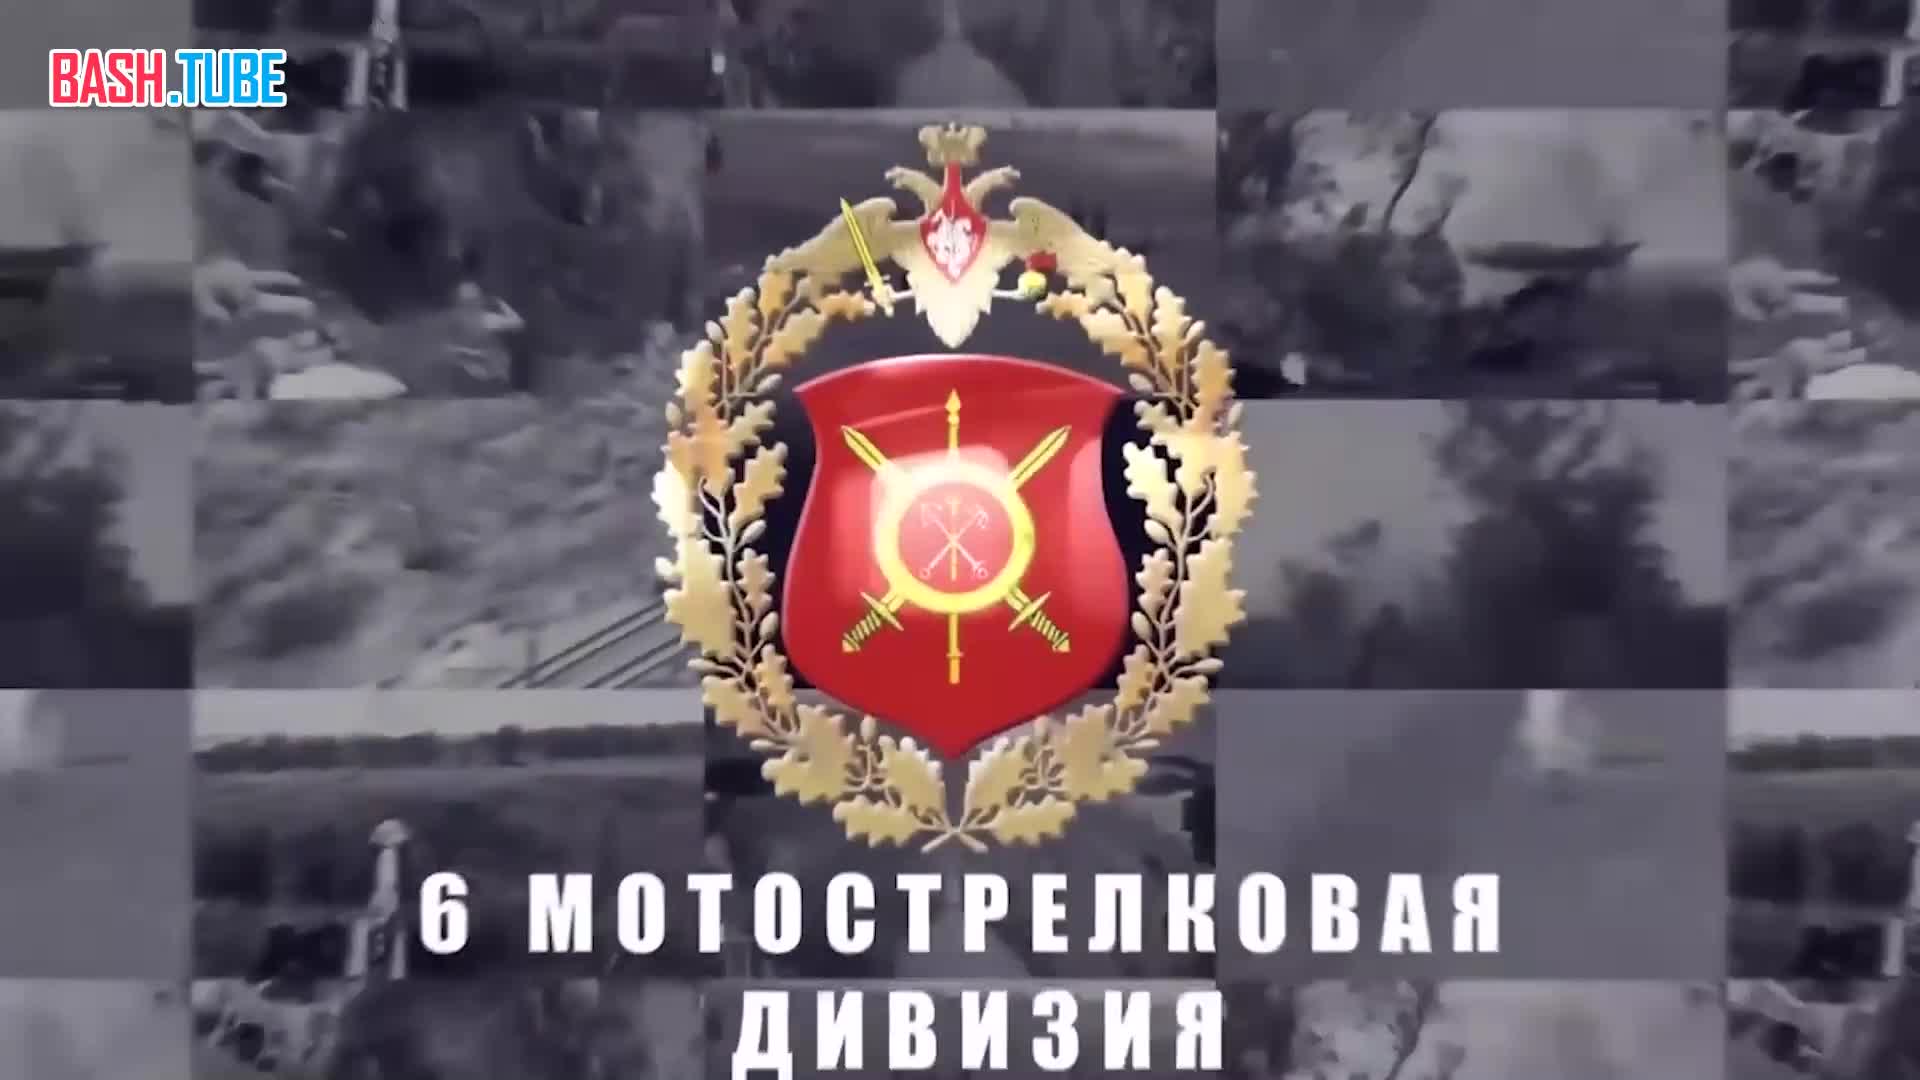 ⁣ Российские бойцы захватили тяжёлый дрон «Баба Яга» и теперь умело «бабушку» против противника используют